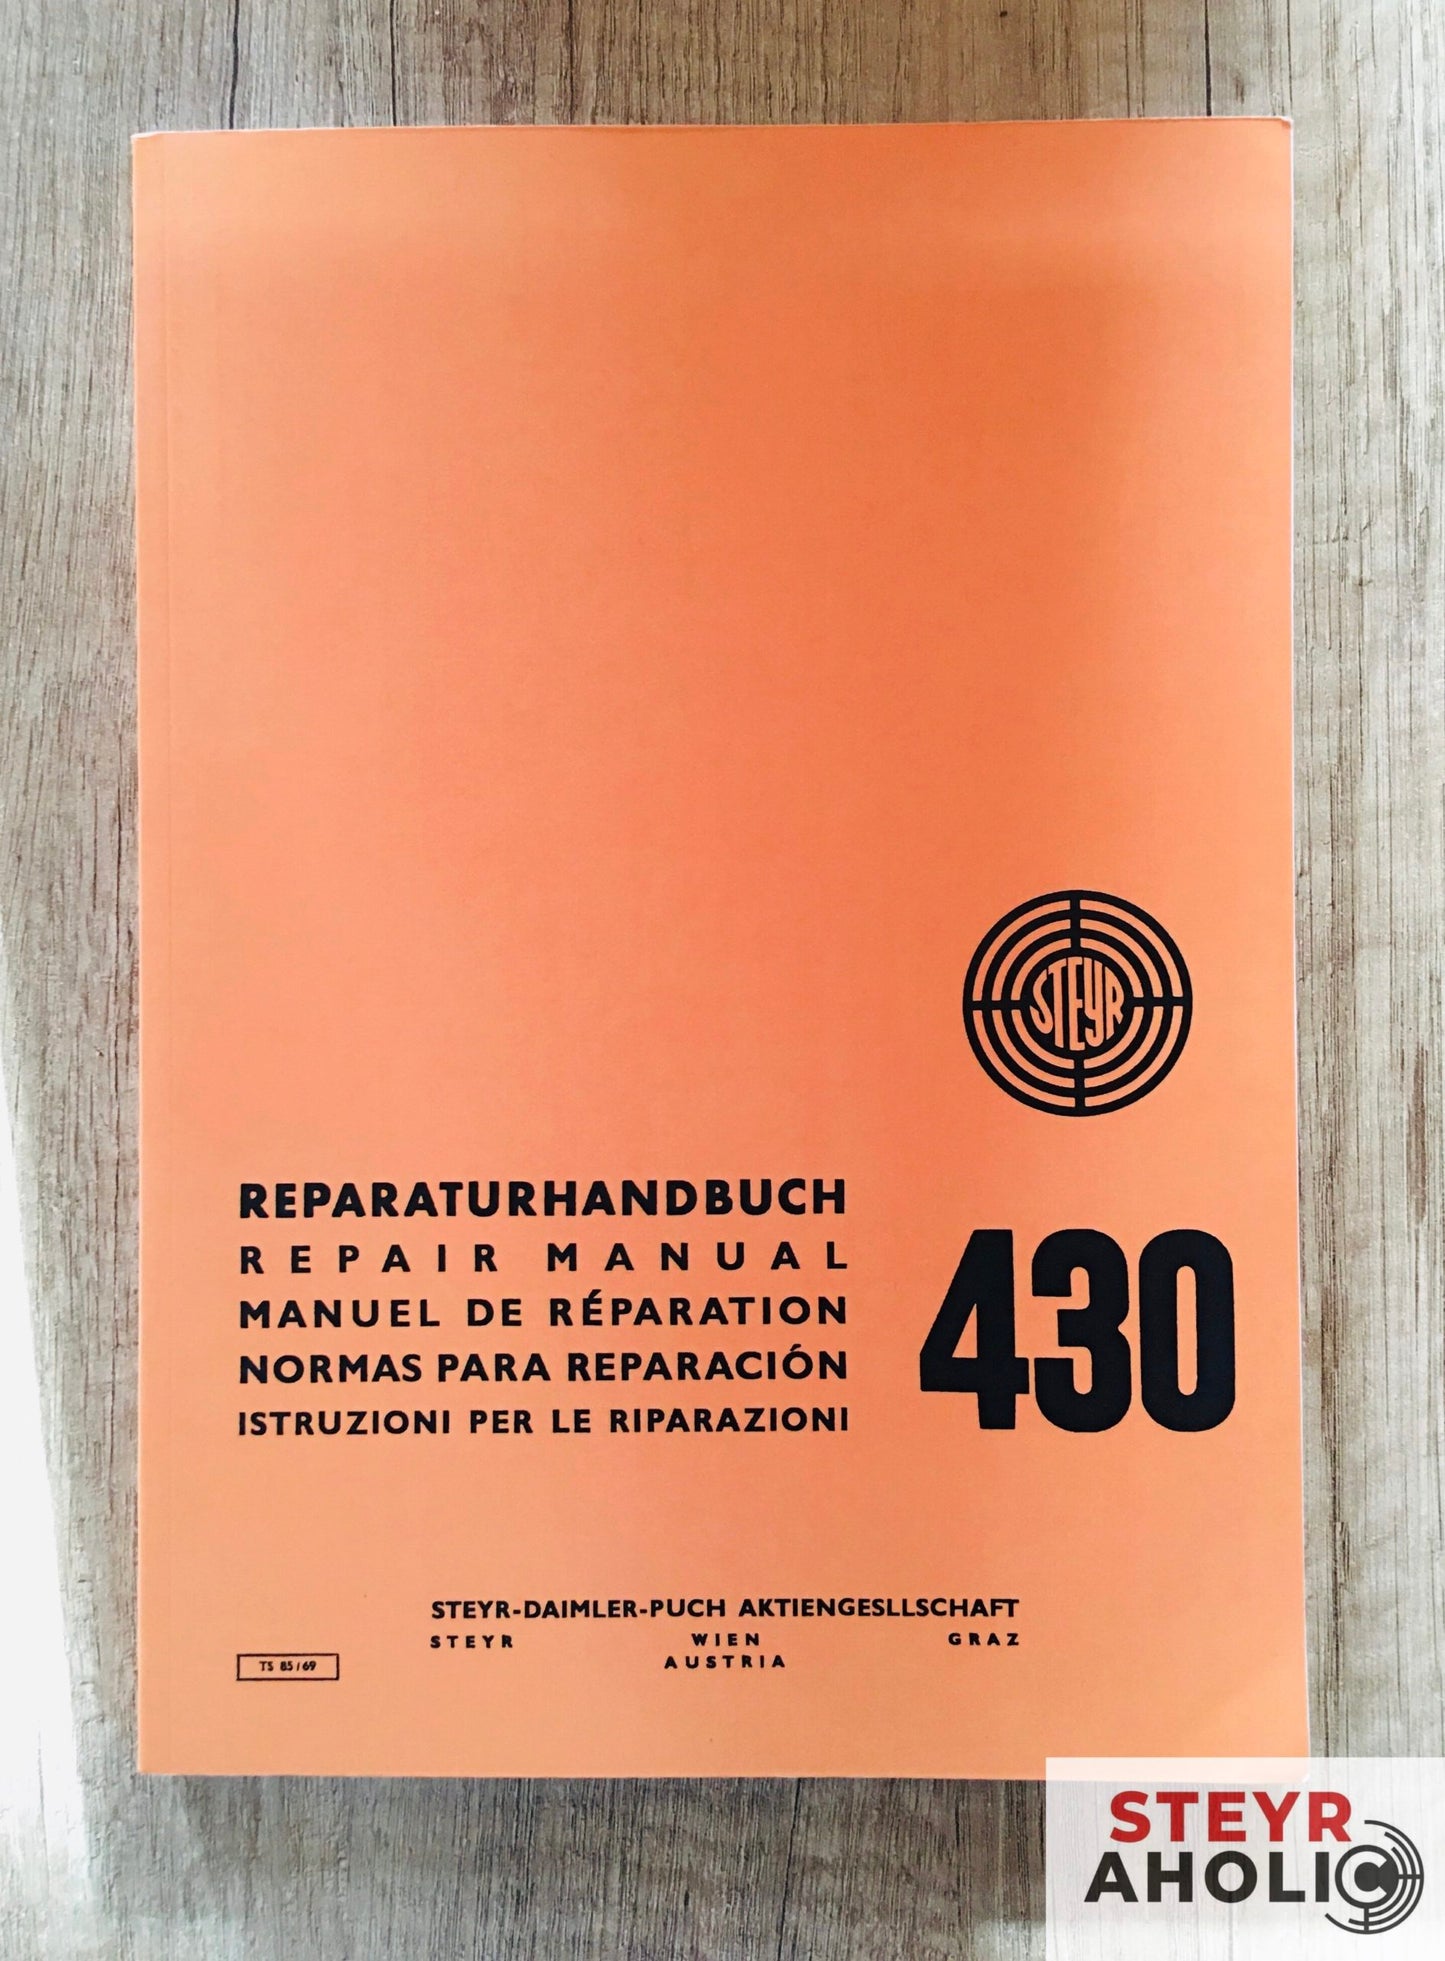 Reparaturhandbuch Steyr 430